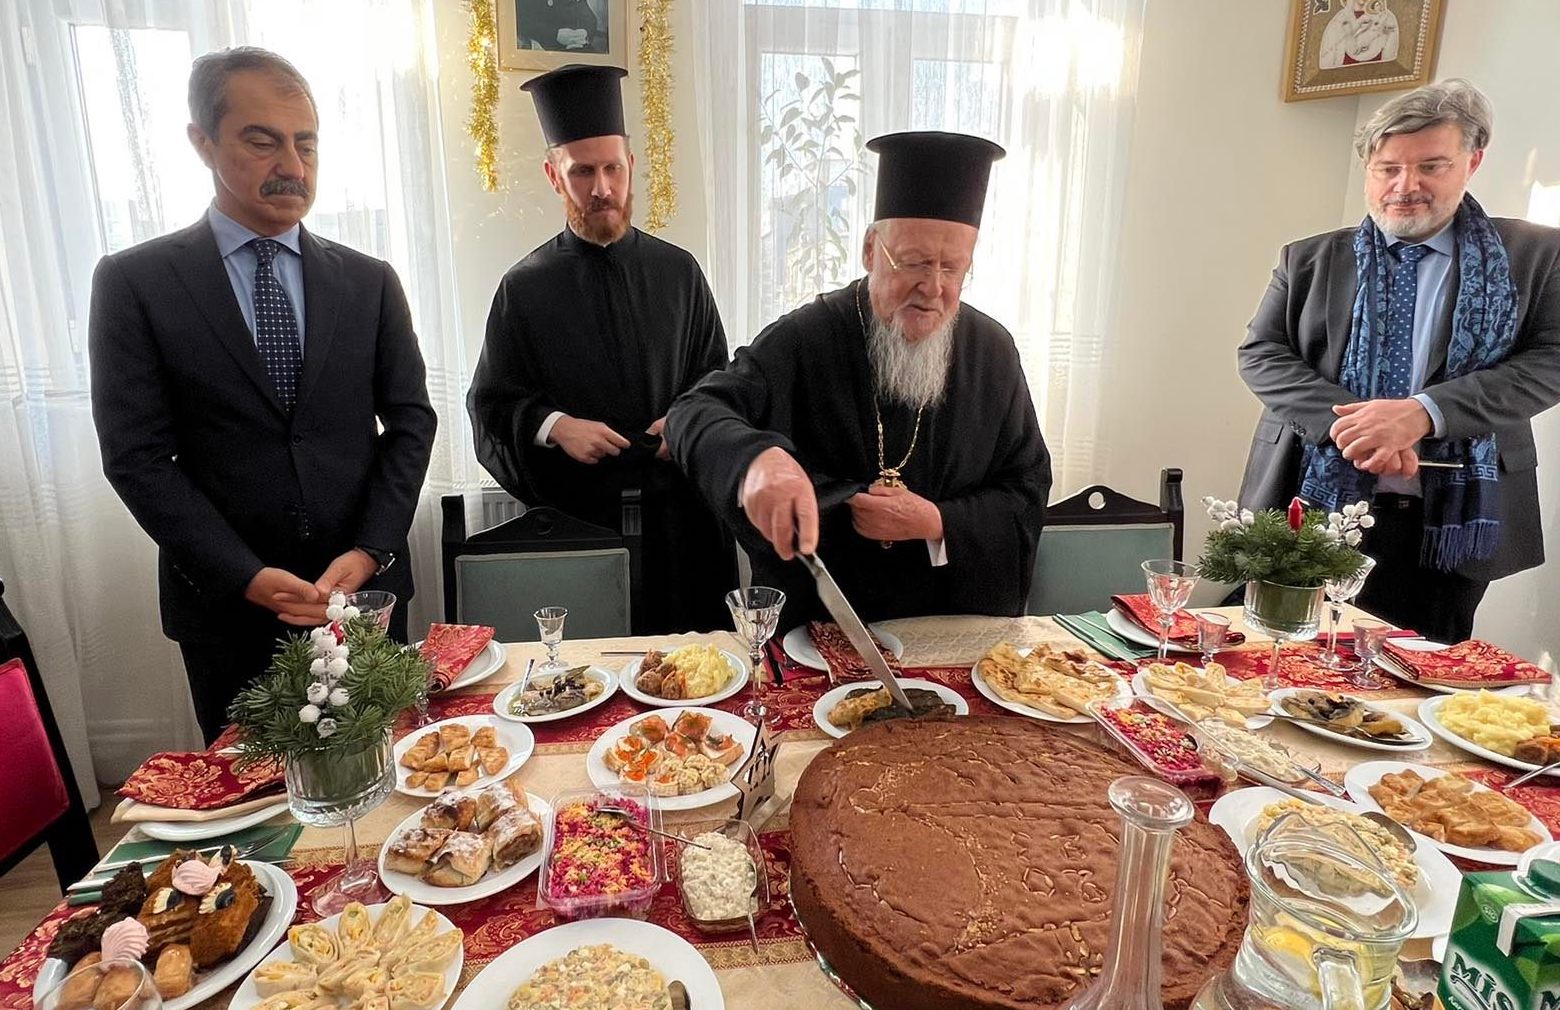 Ο Οικουμενικός Πατριάρχης συνεόρτασε με την ρωσόφωνη παροικία της Πόλεως τα Χριστούγεννα